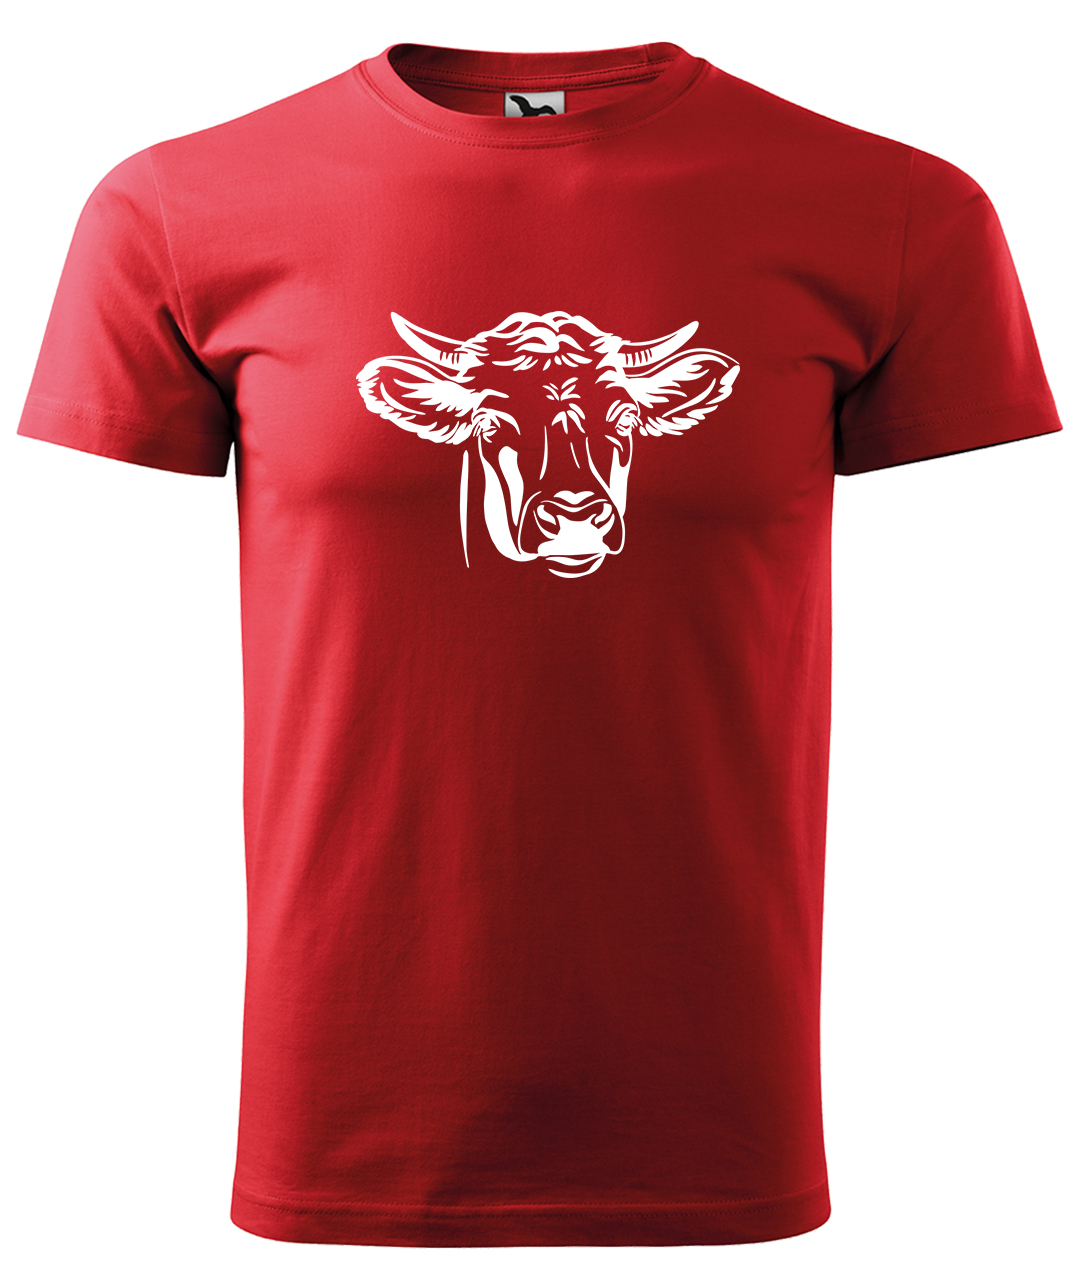 Dětské tričko s krávou - Hlava krávy Velikost: 6 let / 122 cm, Barva: Červená (07), Délka rukávu: Krátký rukáv